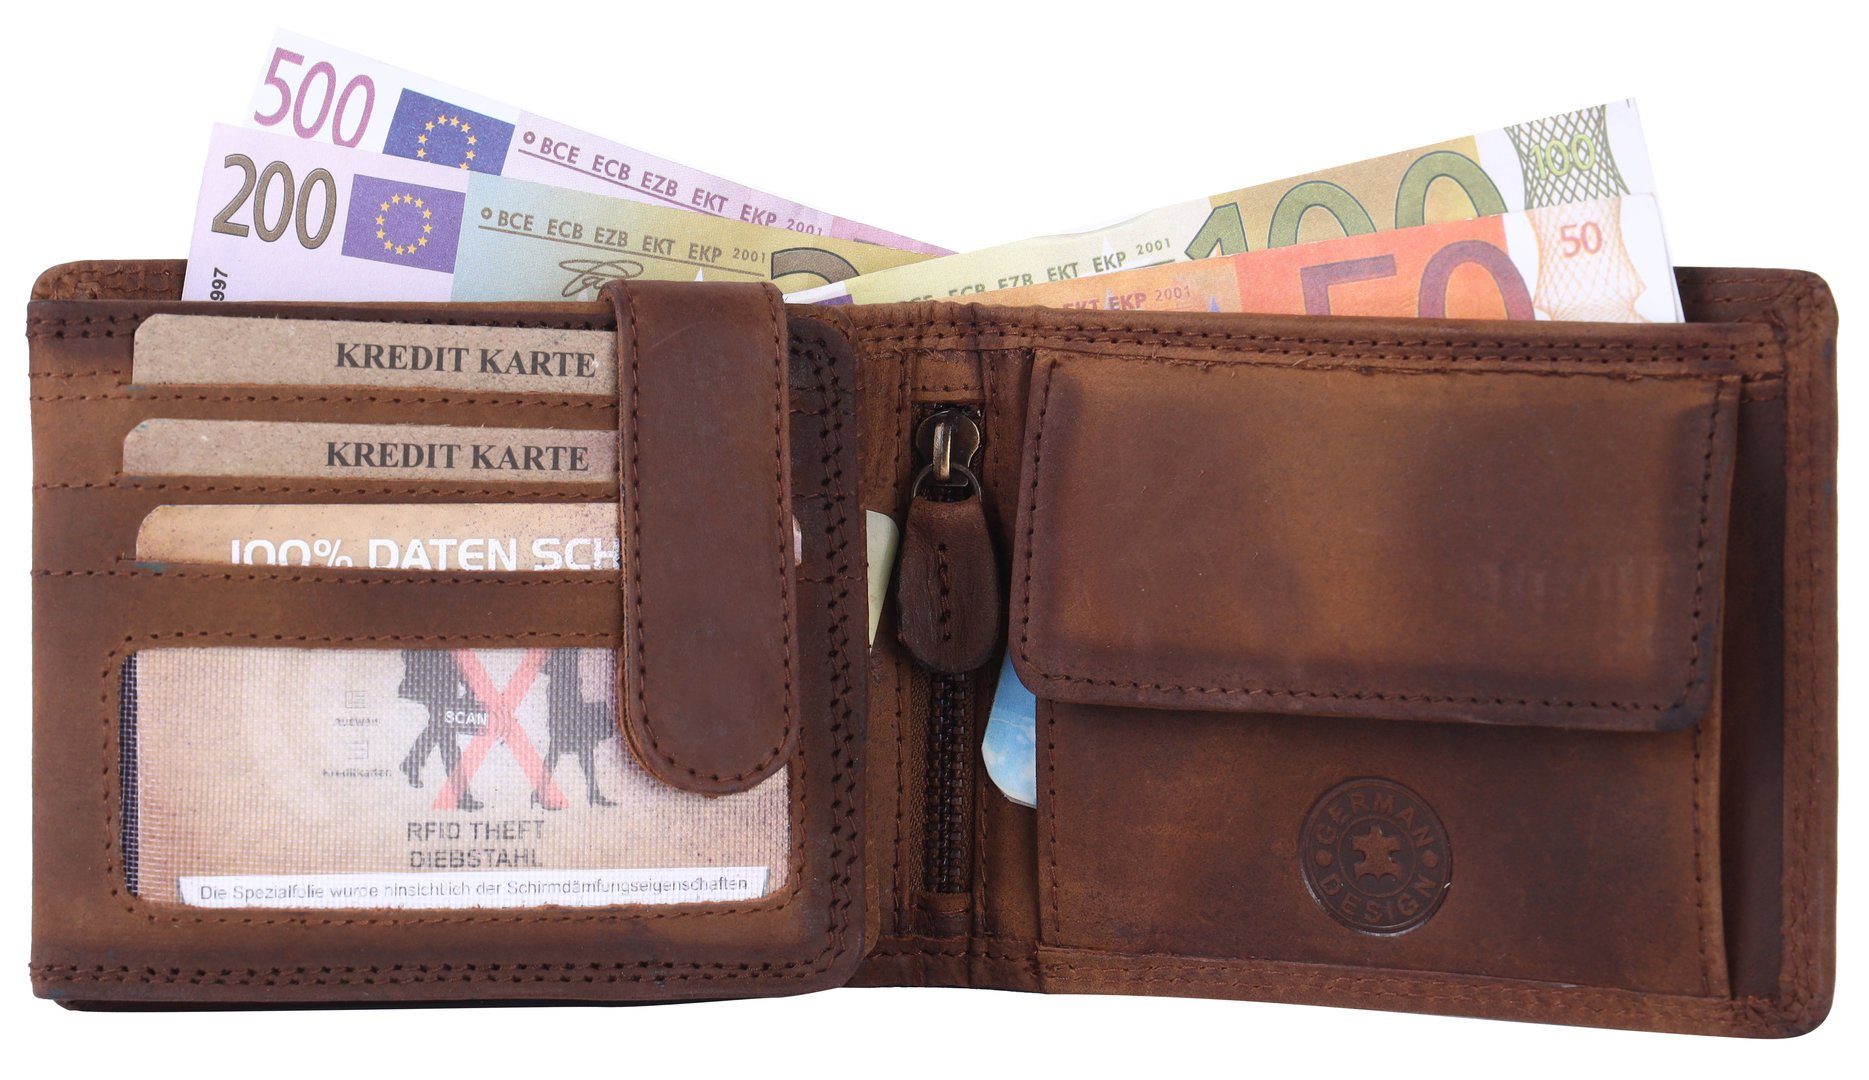 mit Münzfach Börse Leder SHG Schutz Brieftasche Portemonnaie, Männerbörse RFID Geldbörse Büffelleder Lederbörse Herren